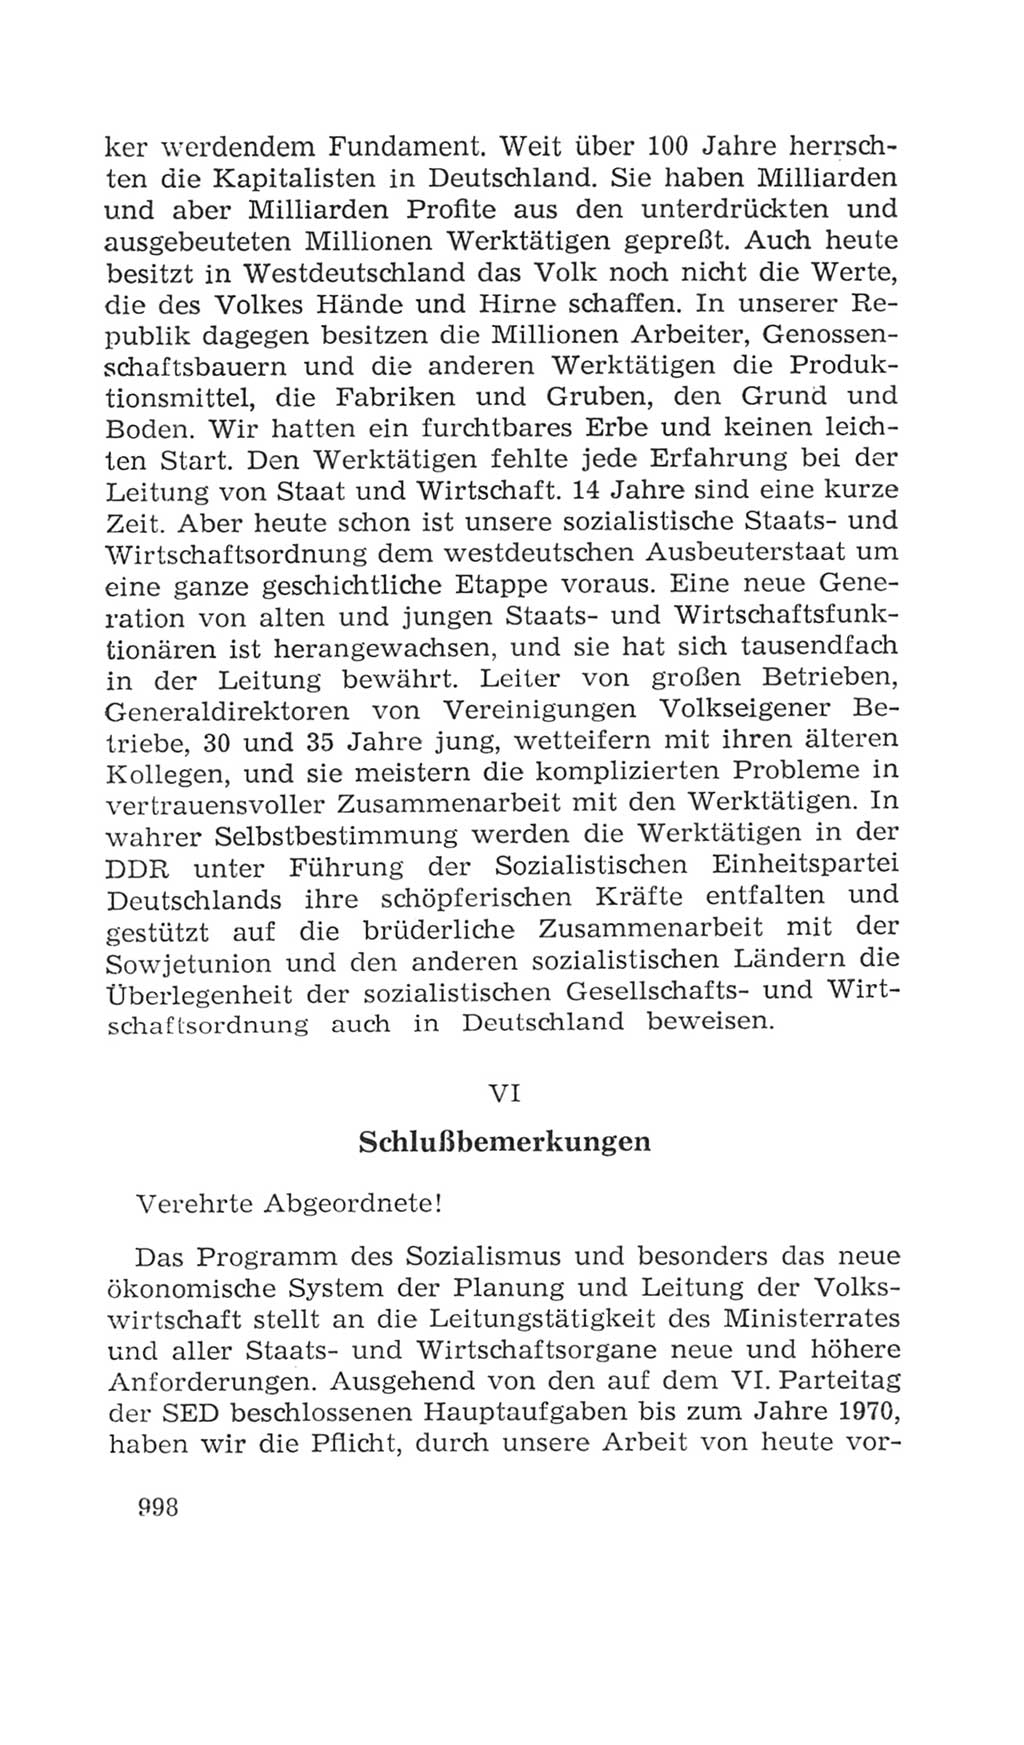 Volkskammer (VK) der Deutschen Demokratischen Republik (DDR), 4. Wahlperiode 1963-1967, Seite 998 (VK. DDR 4. WP. 1963-1967, S. 998)